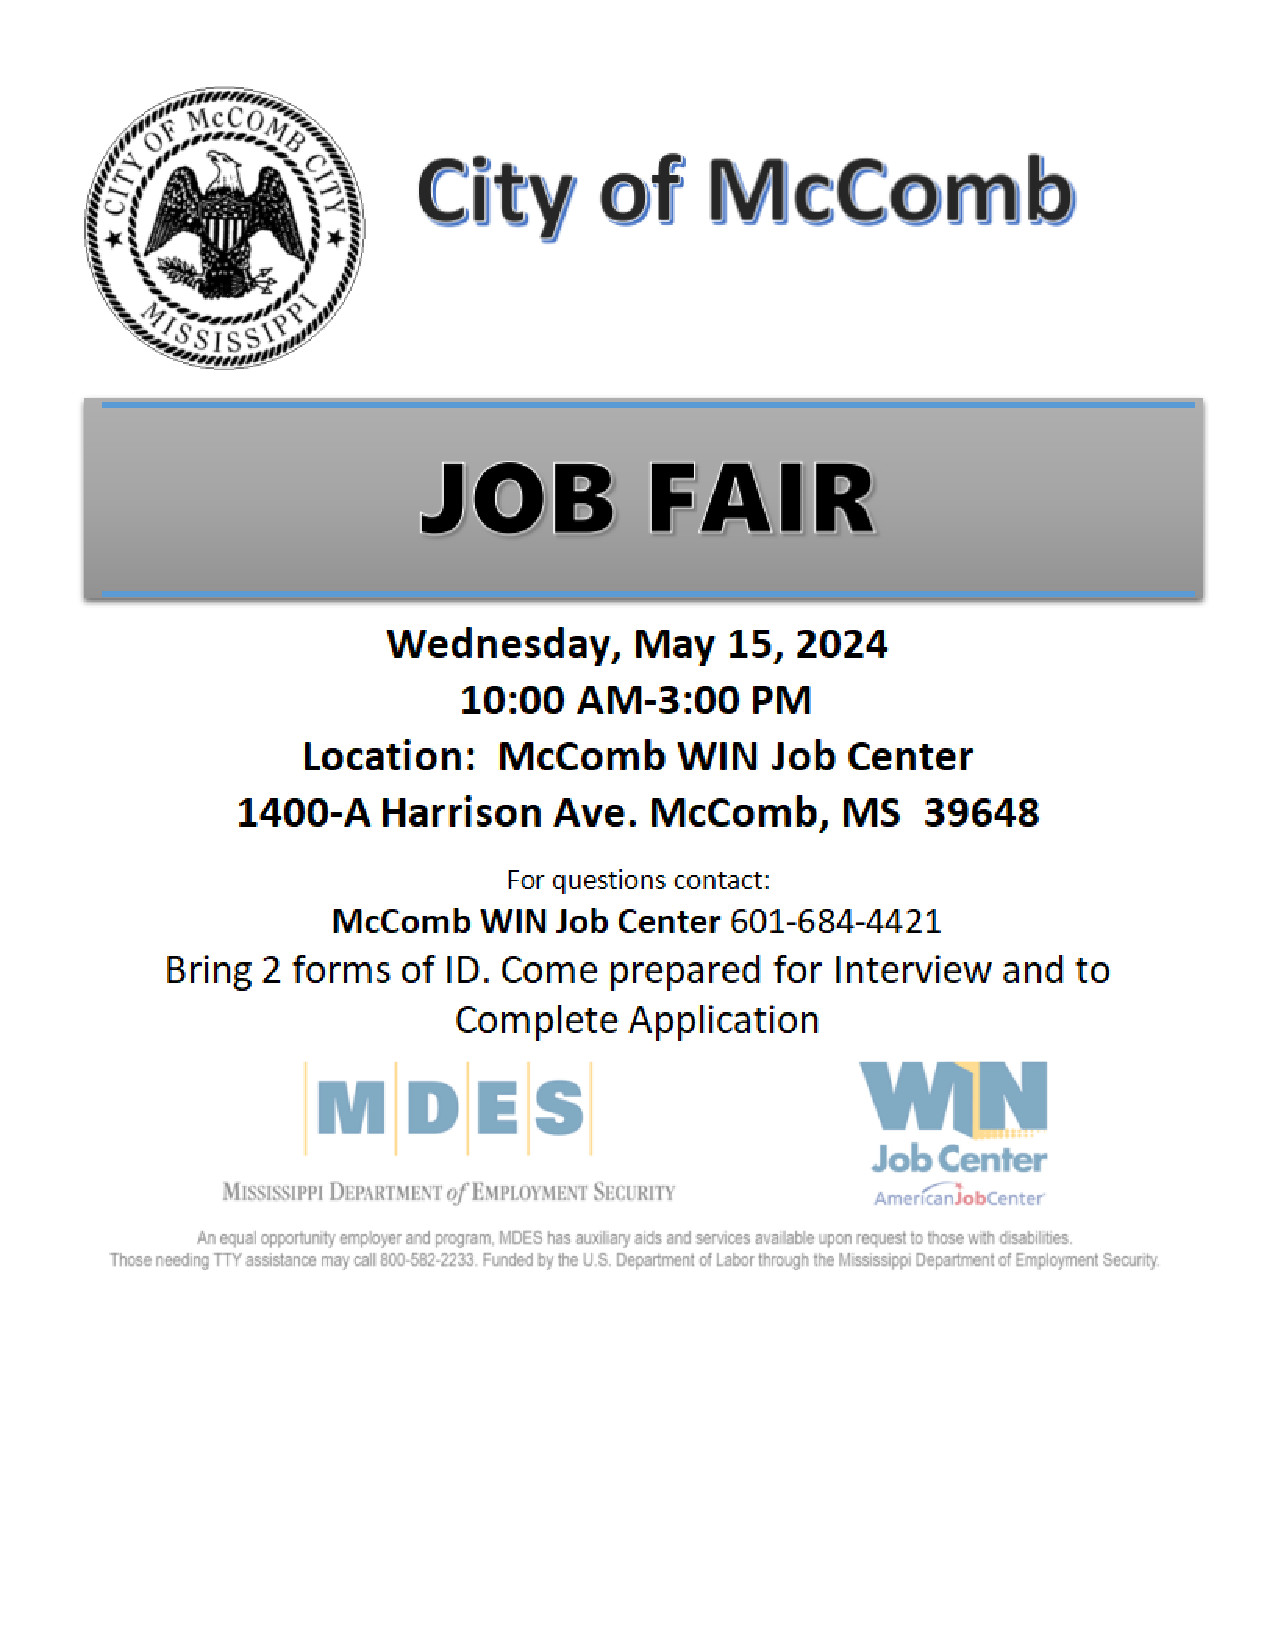 City of McComb job fair 2024